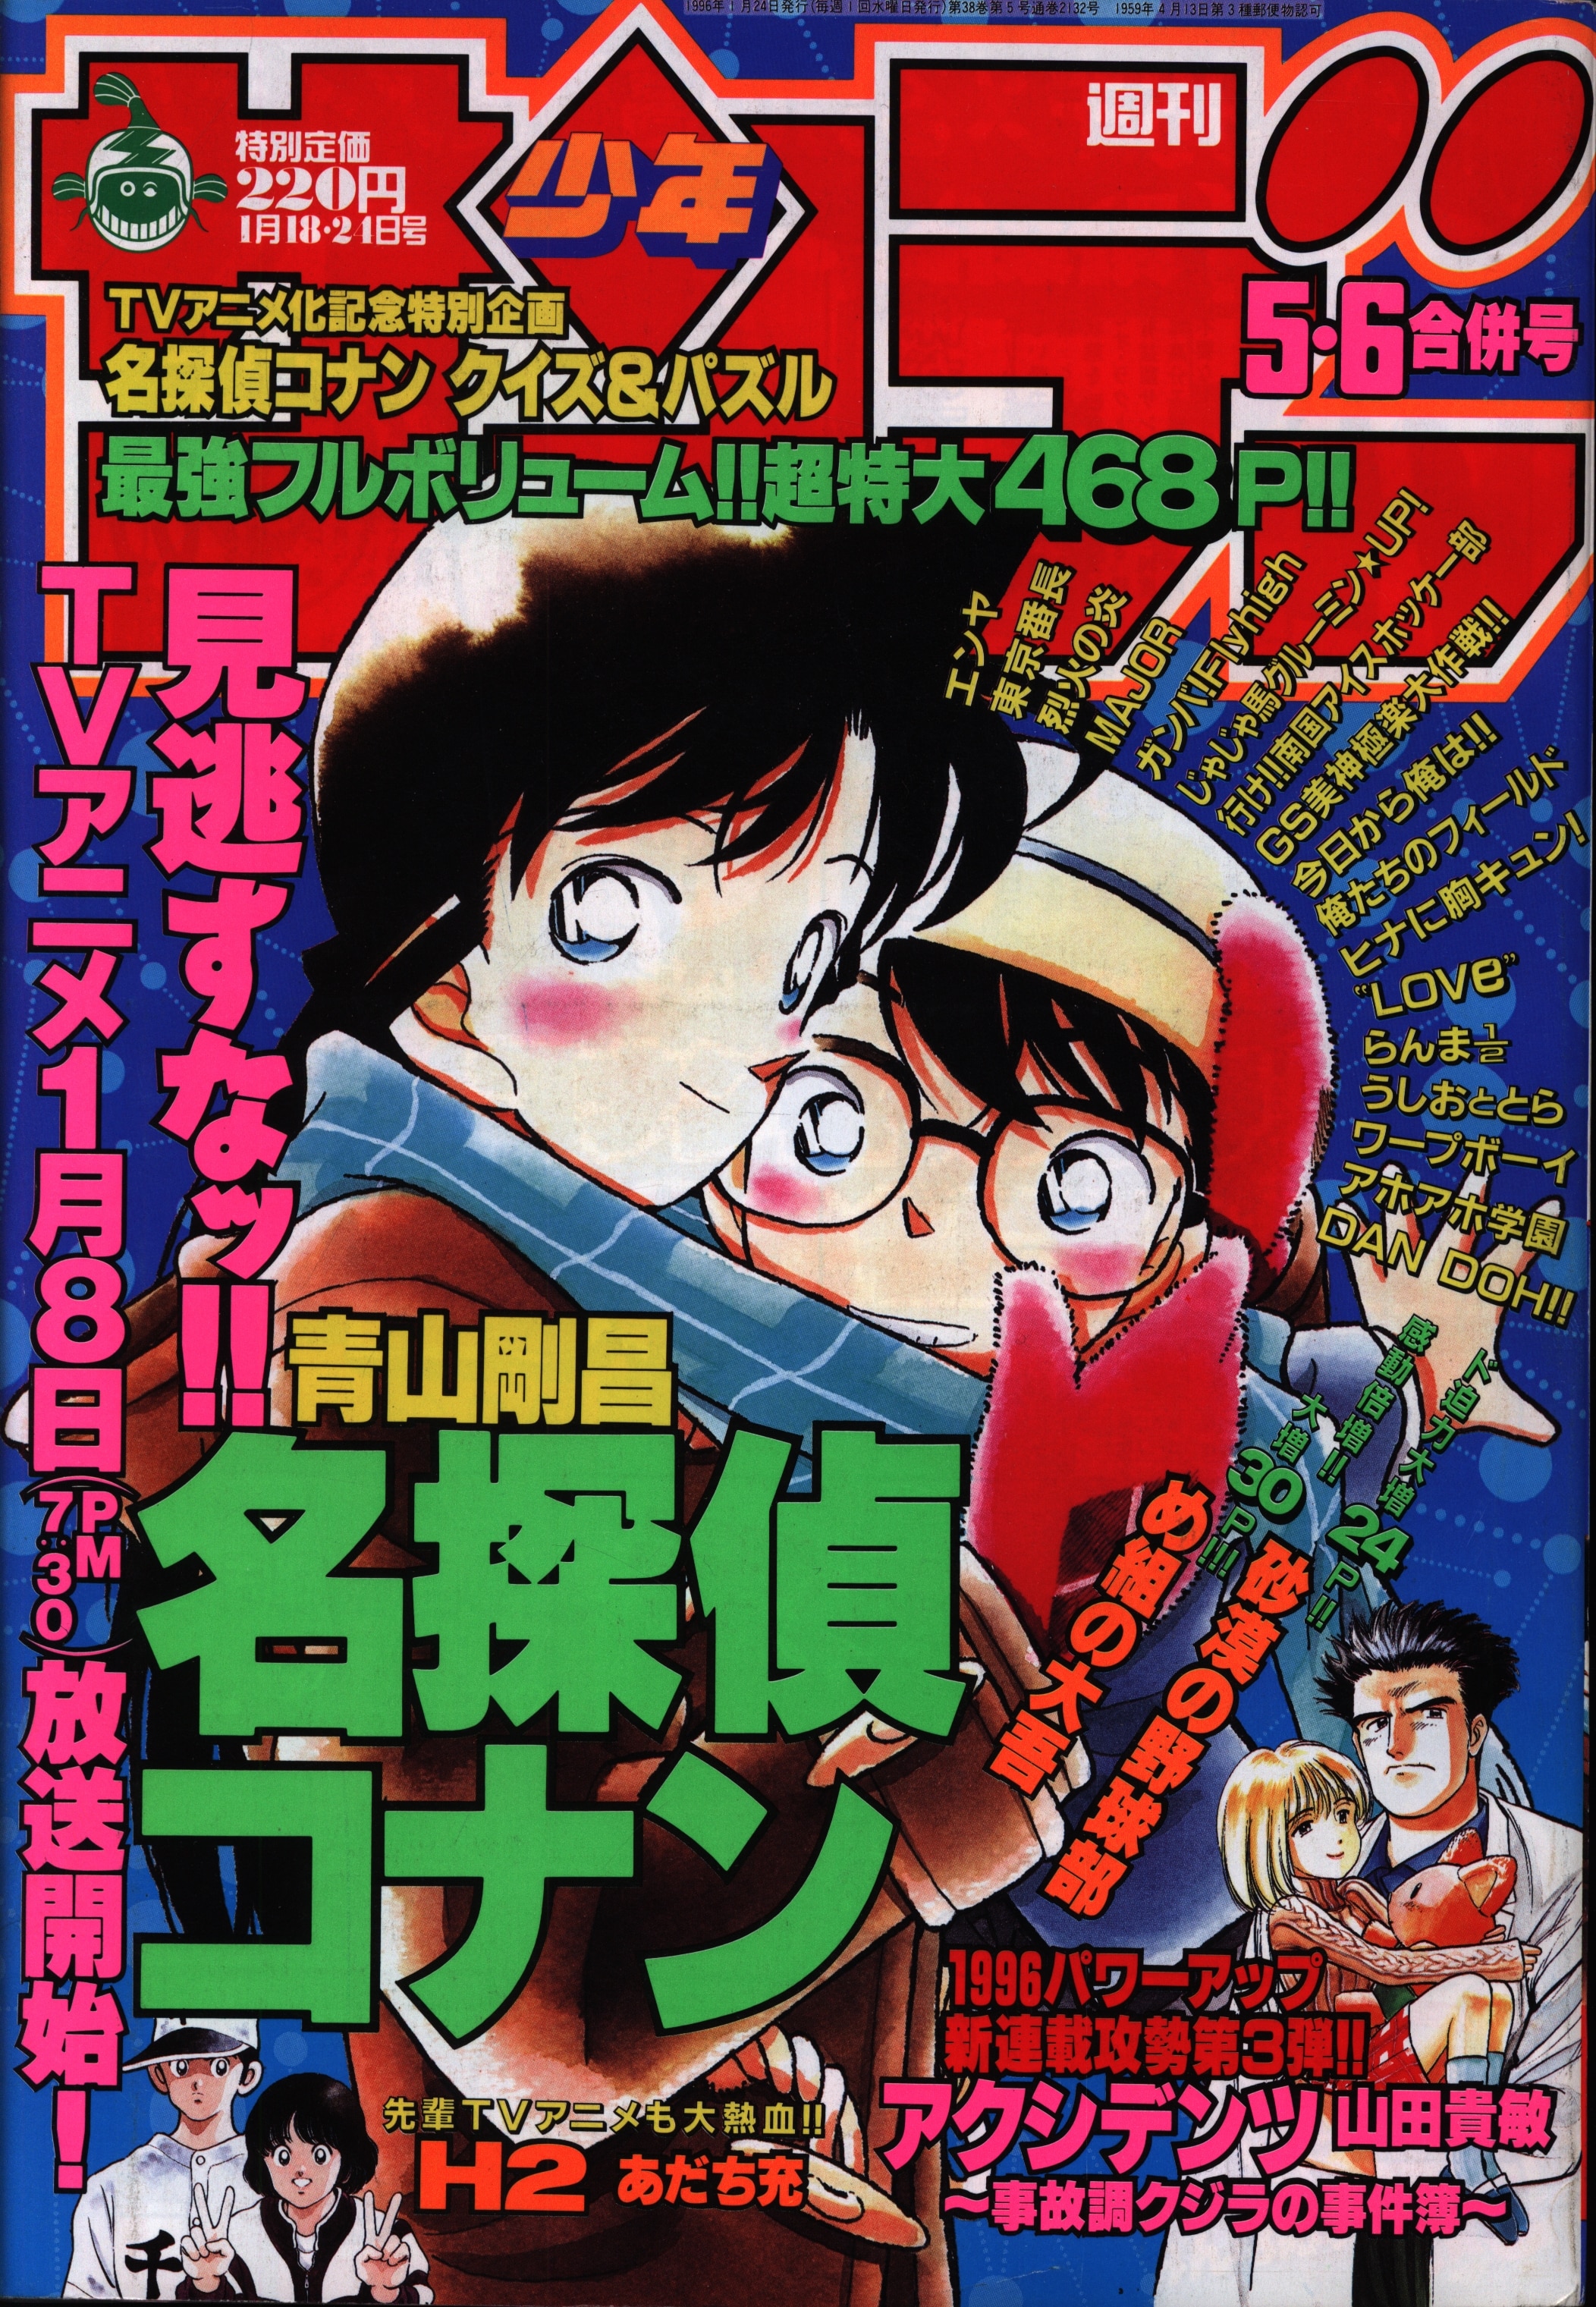 週刊少年サンデー 1996年 5.6号 名探偵コナン表紙 アニメ化記念企画 